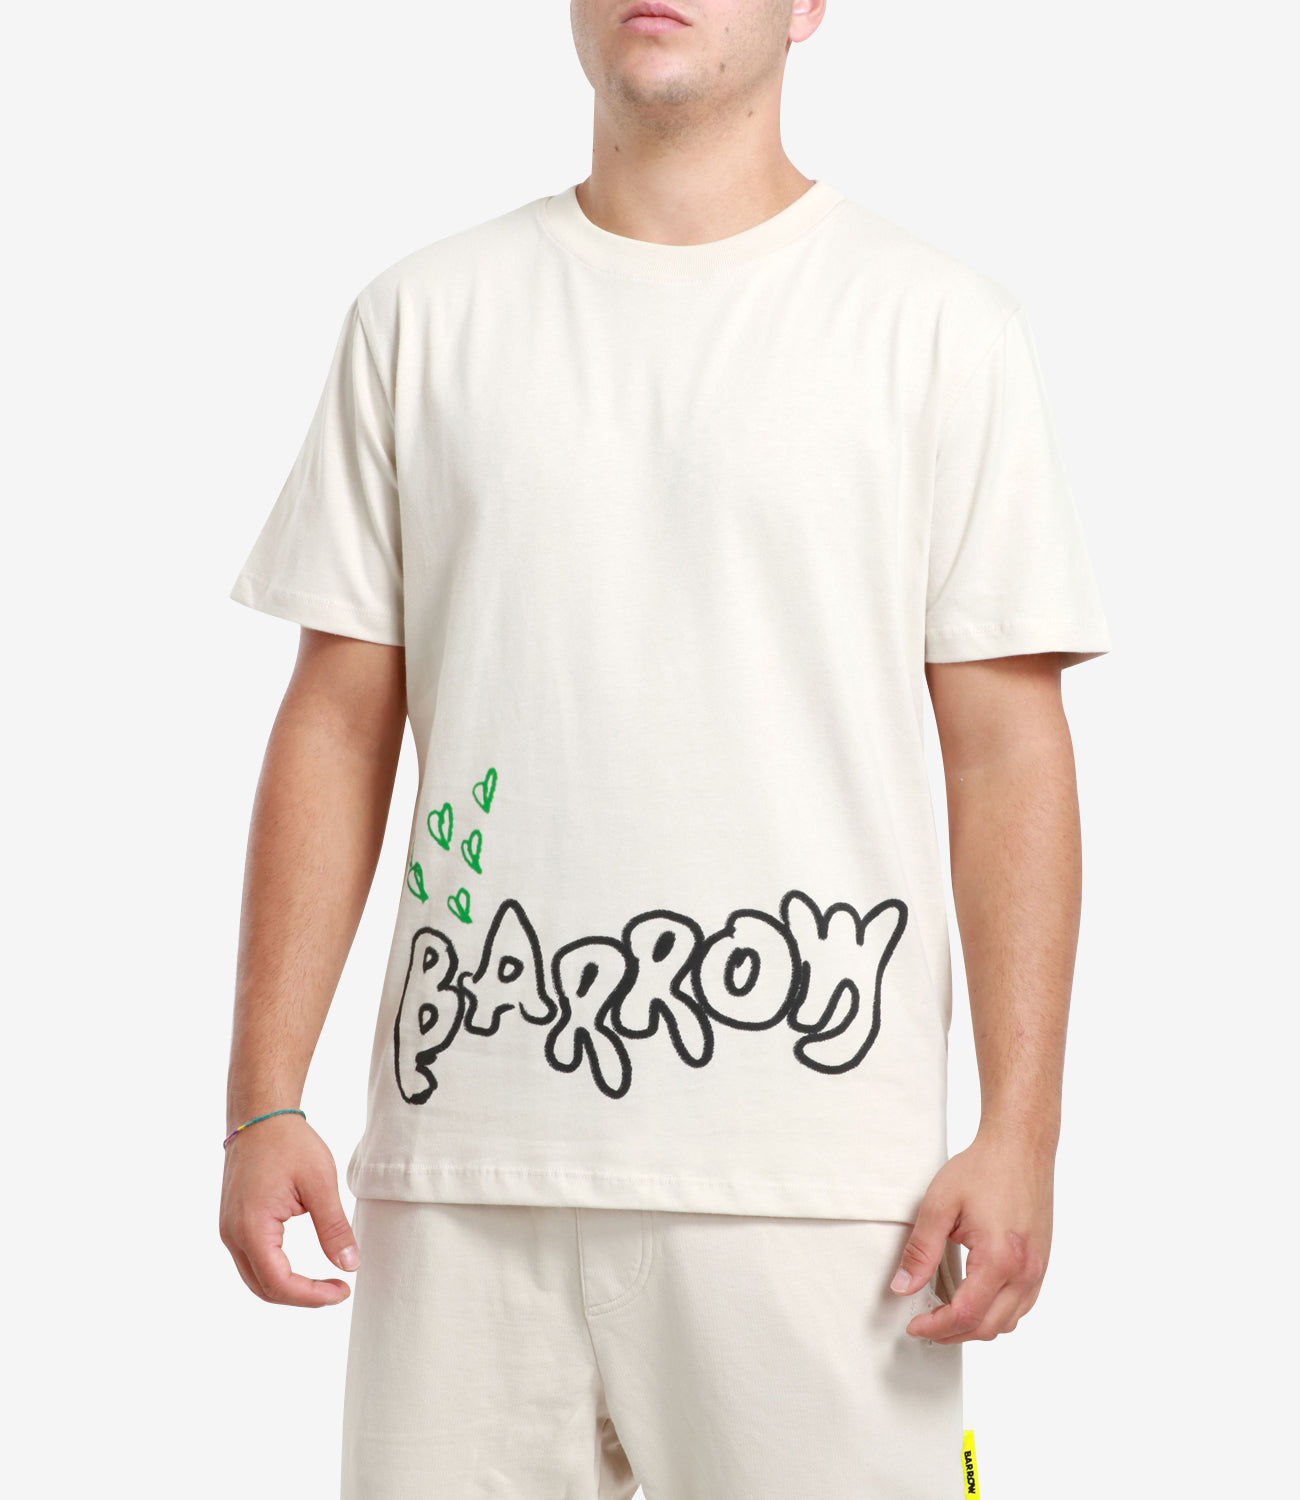 Barrow | T-Shirt Beige